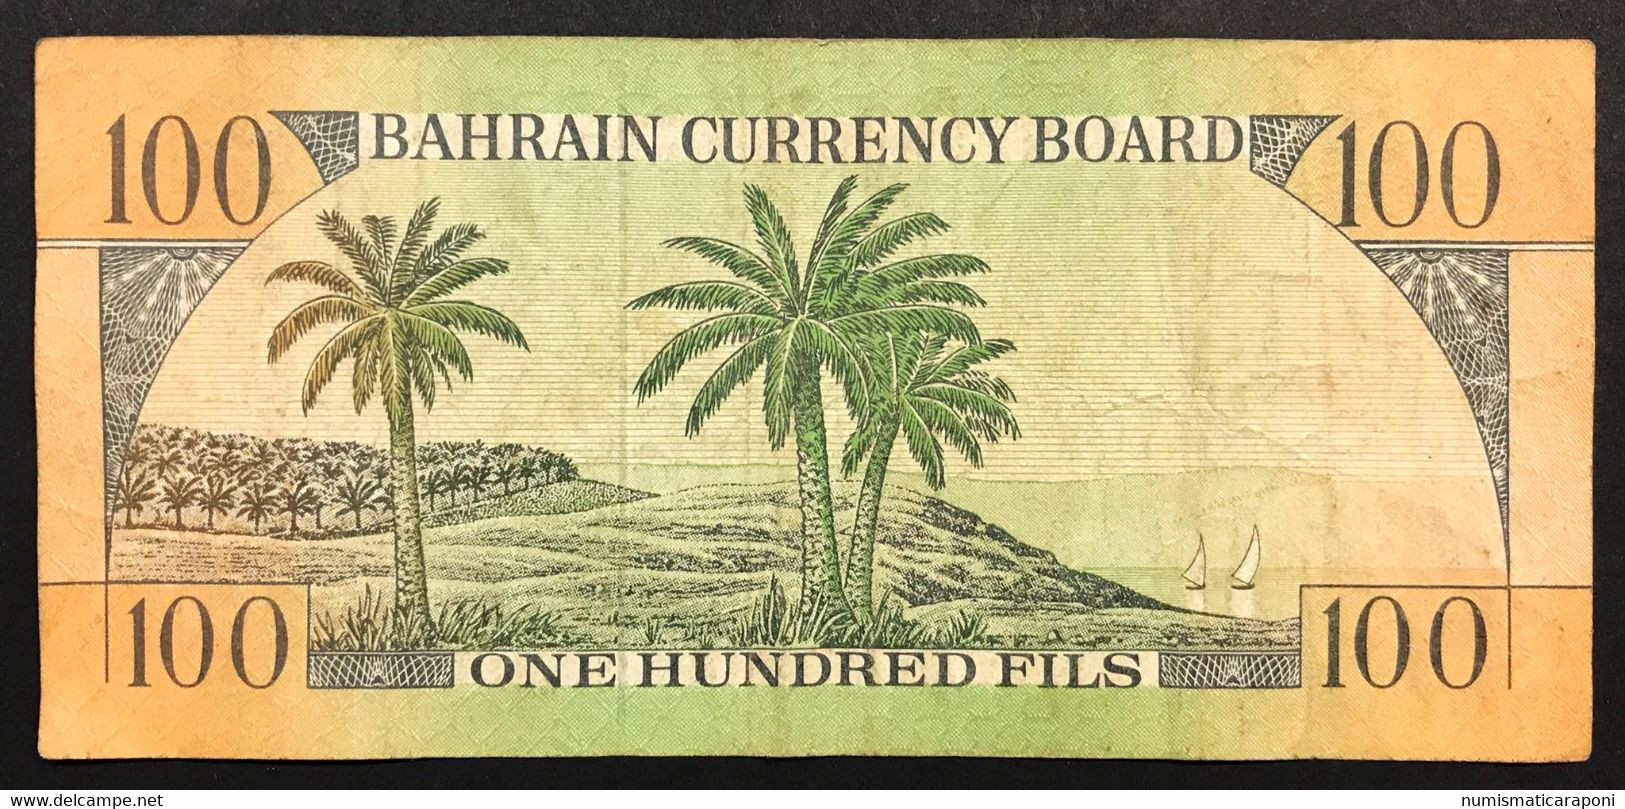 BAHRAIN BAHREIN Billet 100 FILS 1964 P1a + Cambogia 5 Riels LOTTO 1490 - Bahreïn